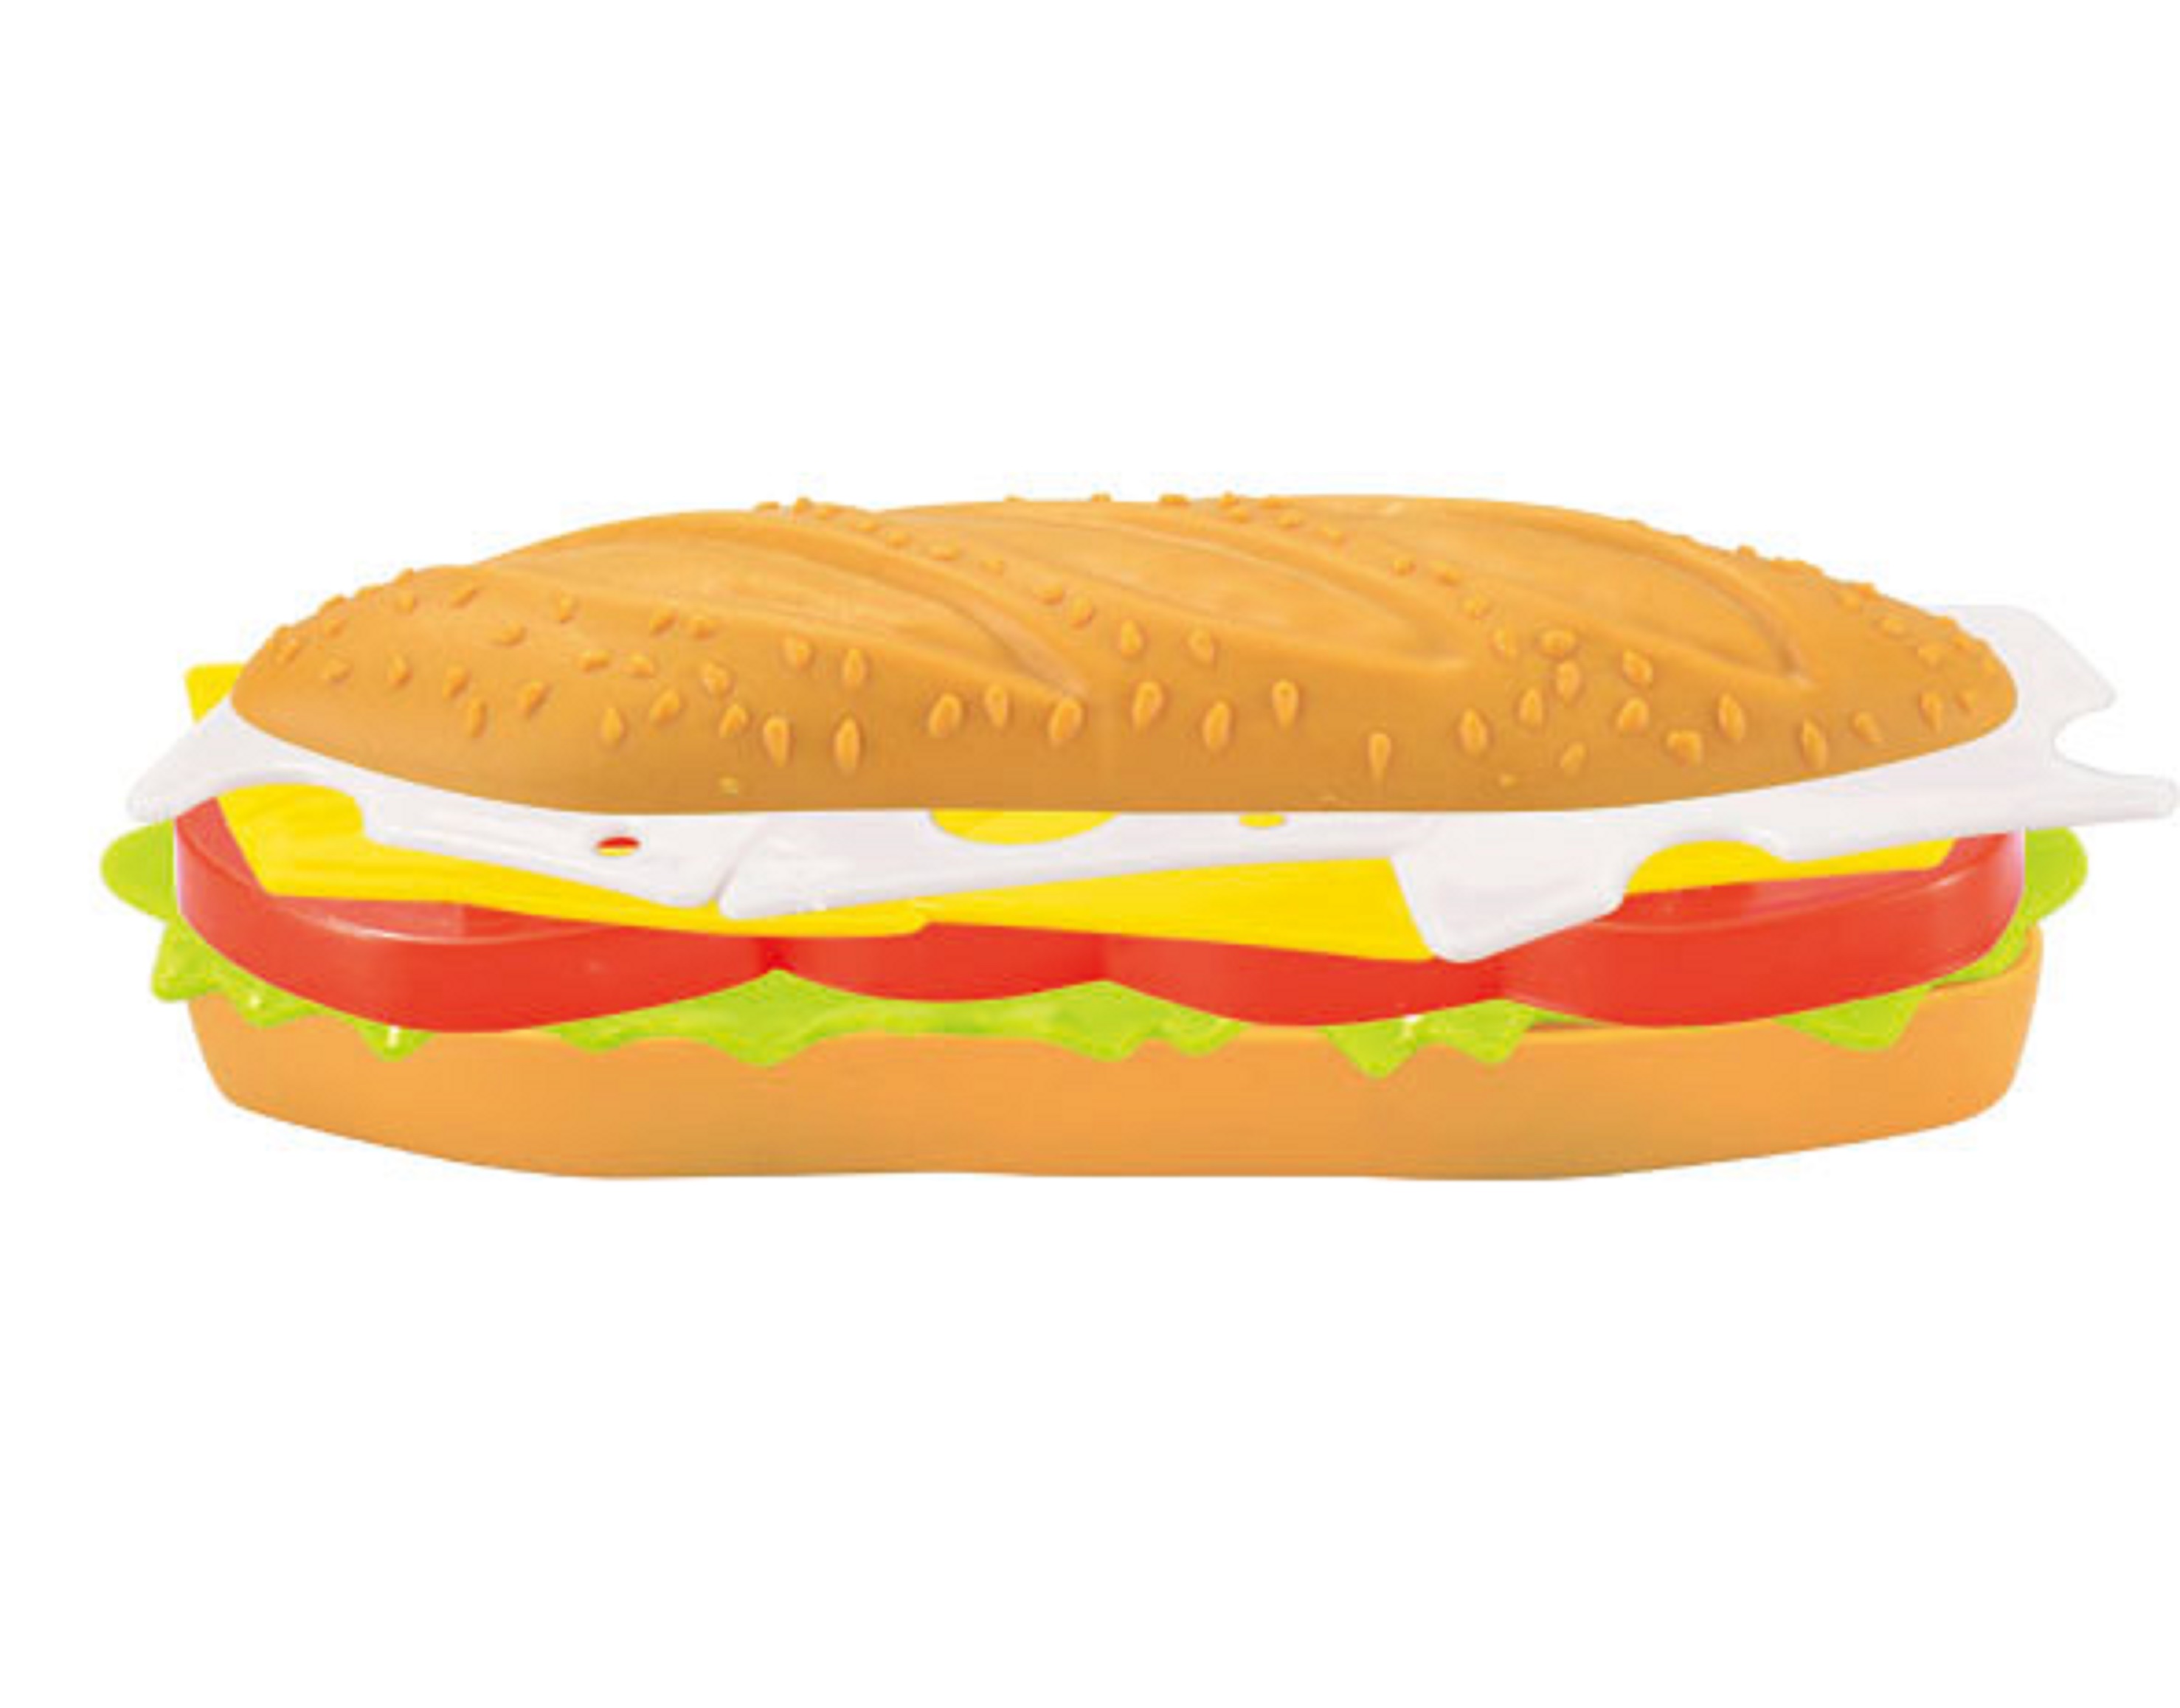 Đồ Chơi Nấu Ăn Hot Dog TOONYKIDS - Đồ Chơi Nhà Bếp Cho Bé - Hot Dog TN080